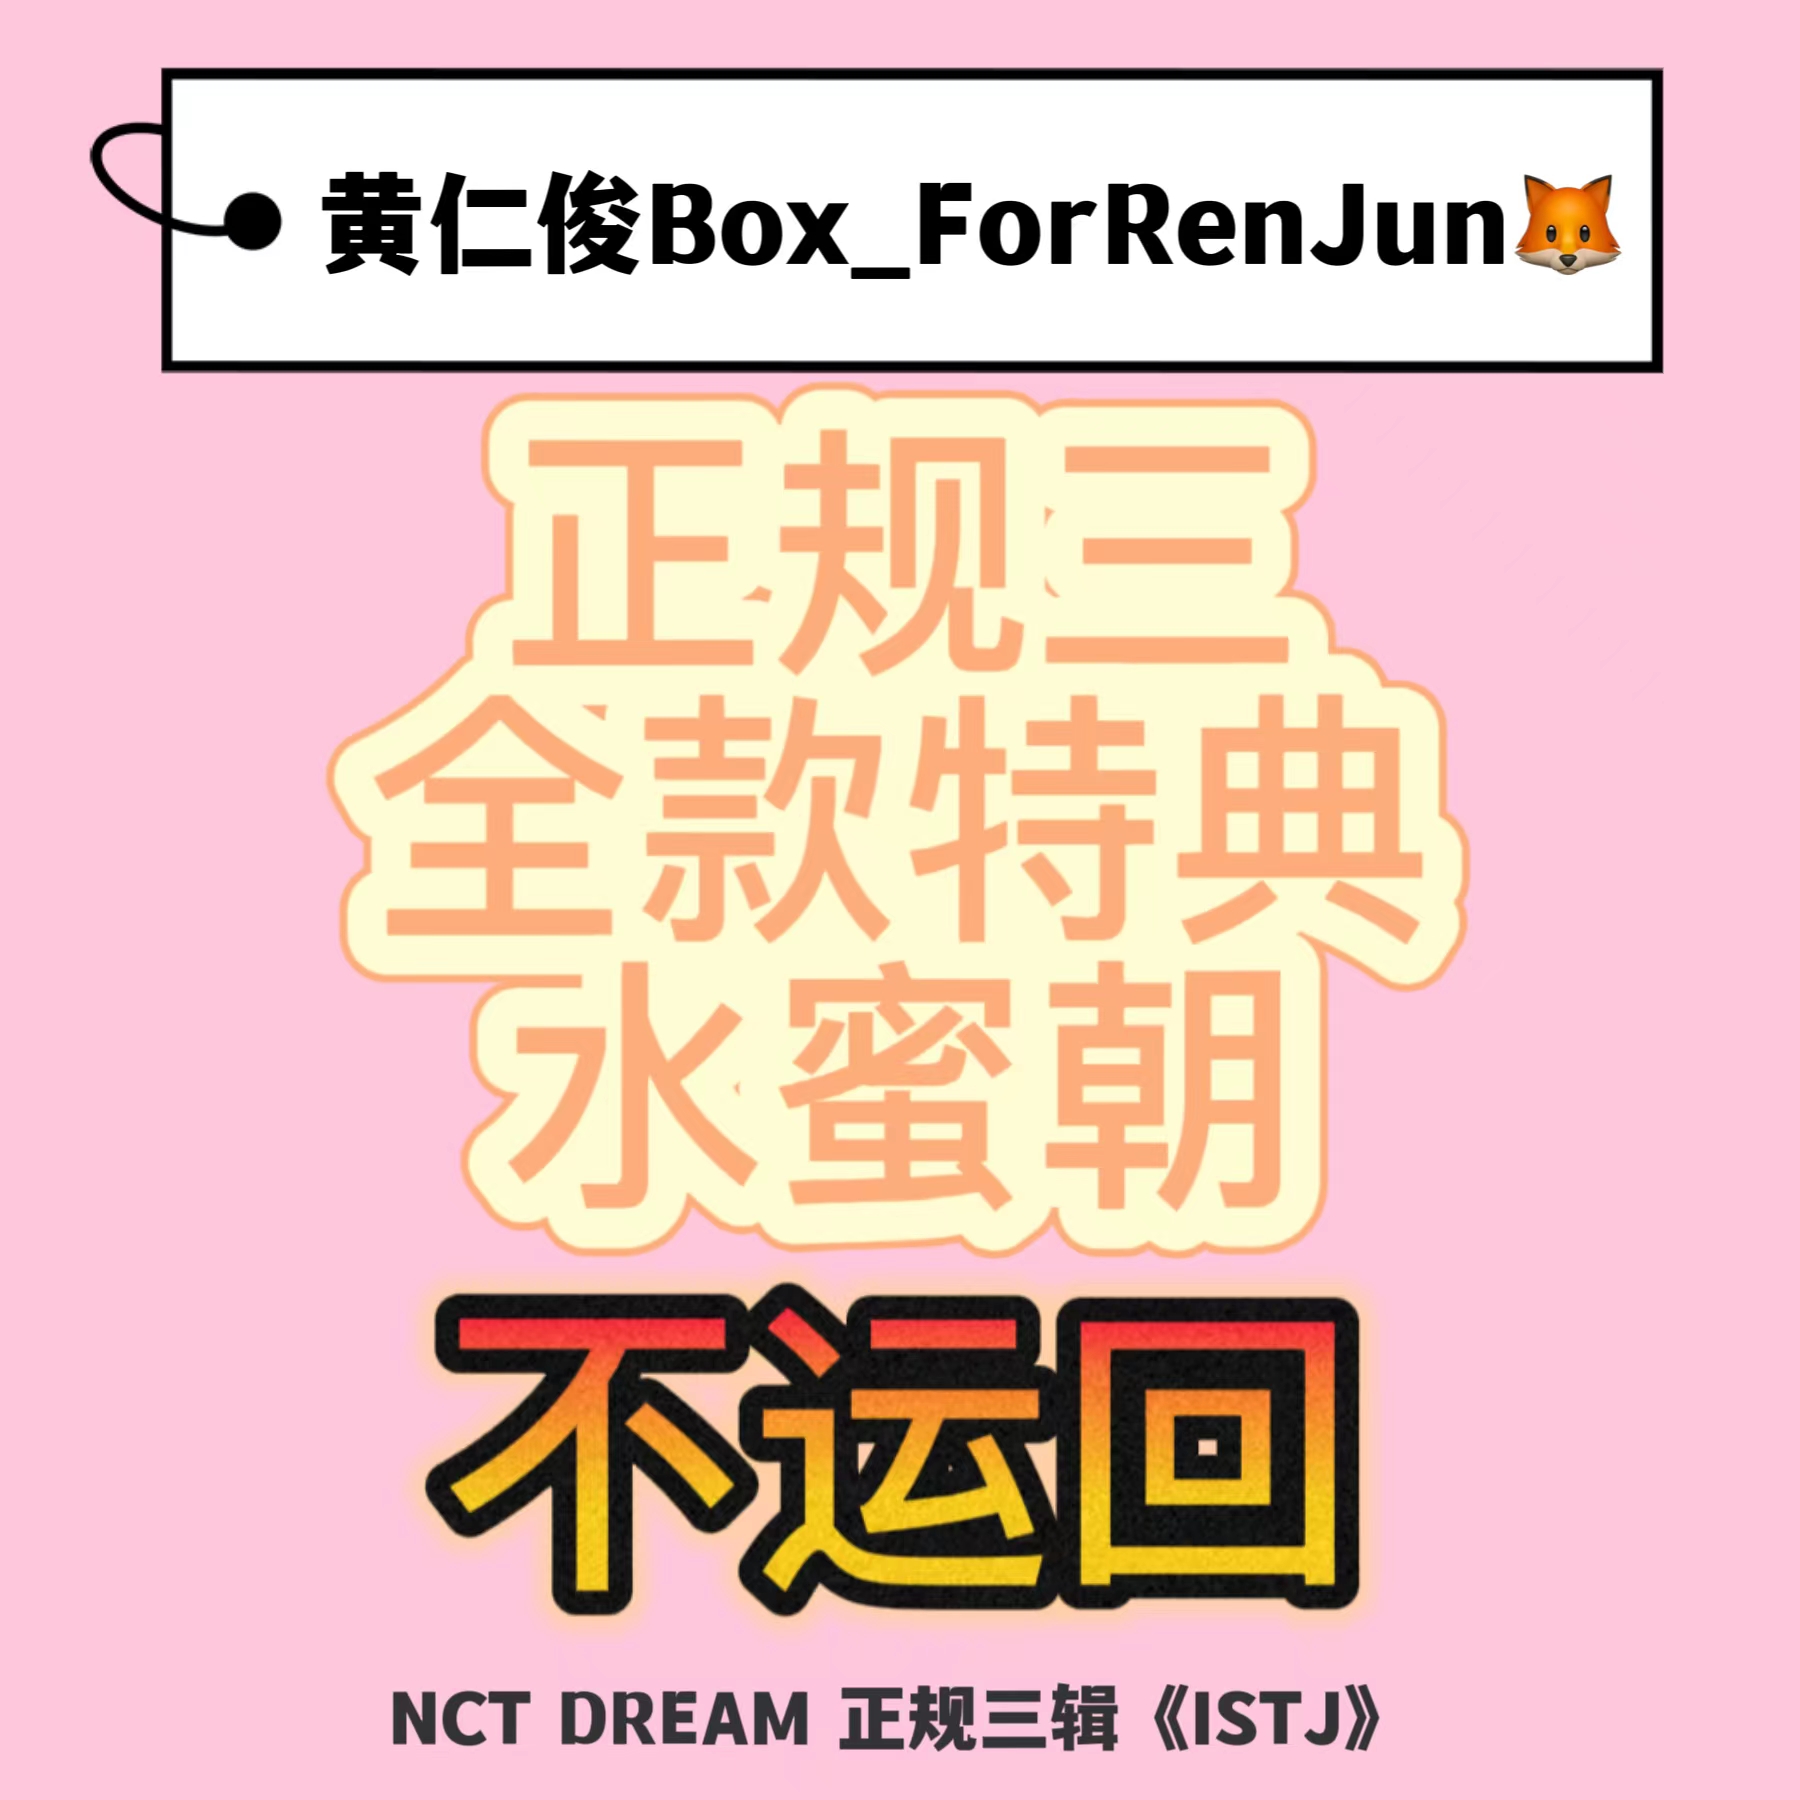 [拆卡专 水蜜朝 特典专] [Ktown4u Special Gift] NCT DREAM - 正规3辑 [ISTJ] (Poster Ver.) (随机版本)_黄仁俊吧RenJunBar